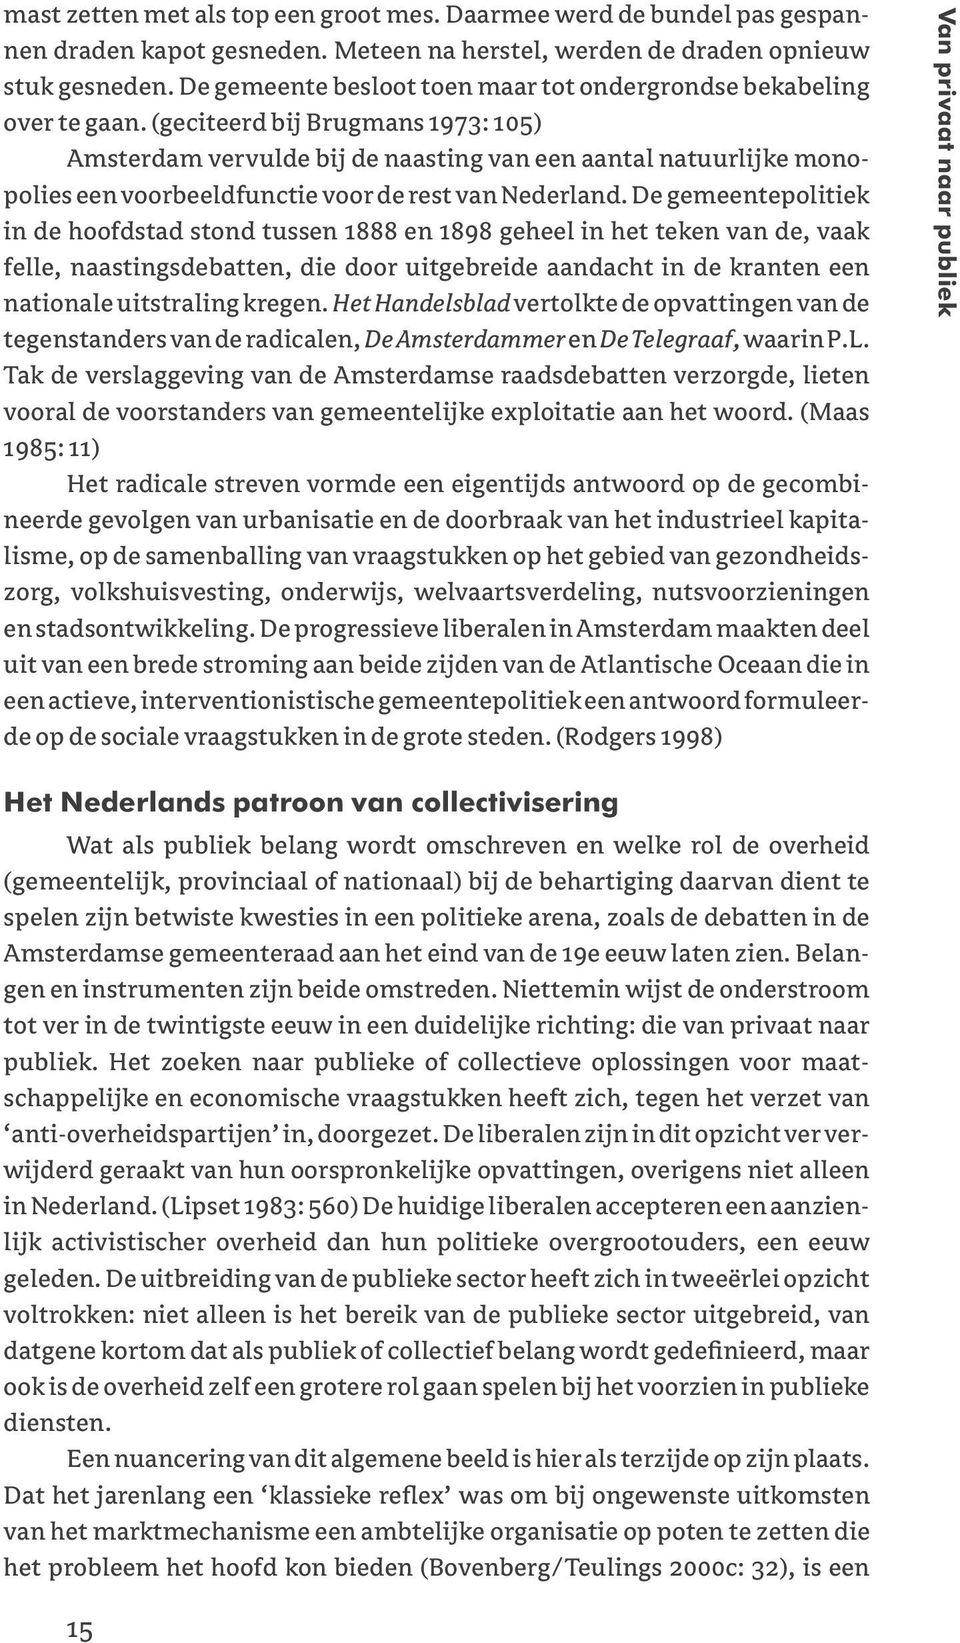 (geciteerd bij Brugmans 1973: 105) Amsterdam vervulde bij de naasting van een aantal natuurlijke monopolies een voorbeeldfunctie voor de rest van Nederland.